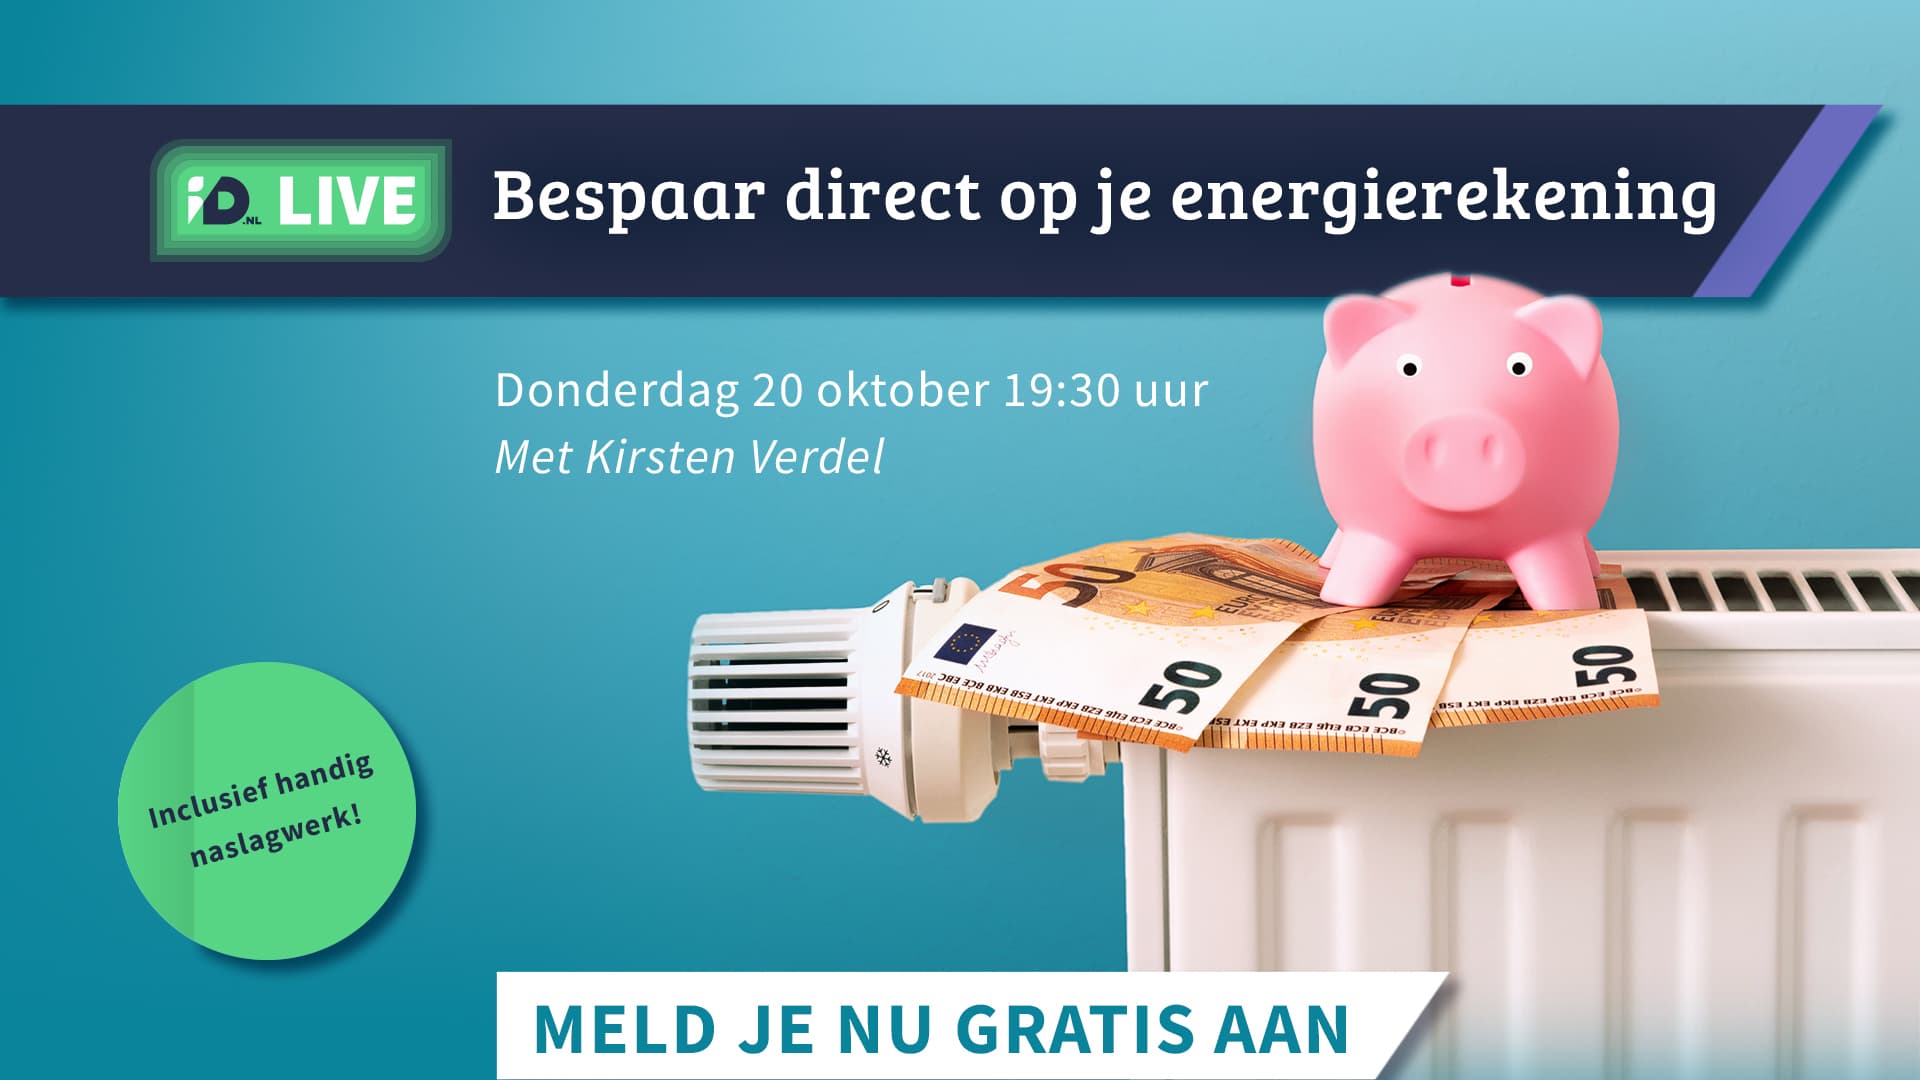 Meld je gratis aan voor de livestream Energie besparen op donderdag 20 oktober om 19:30